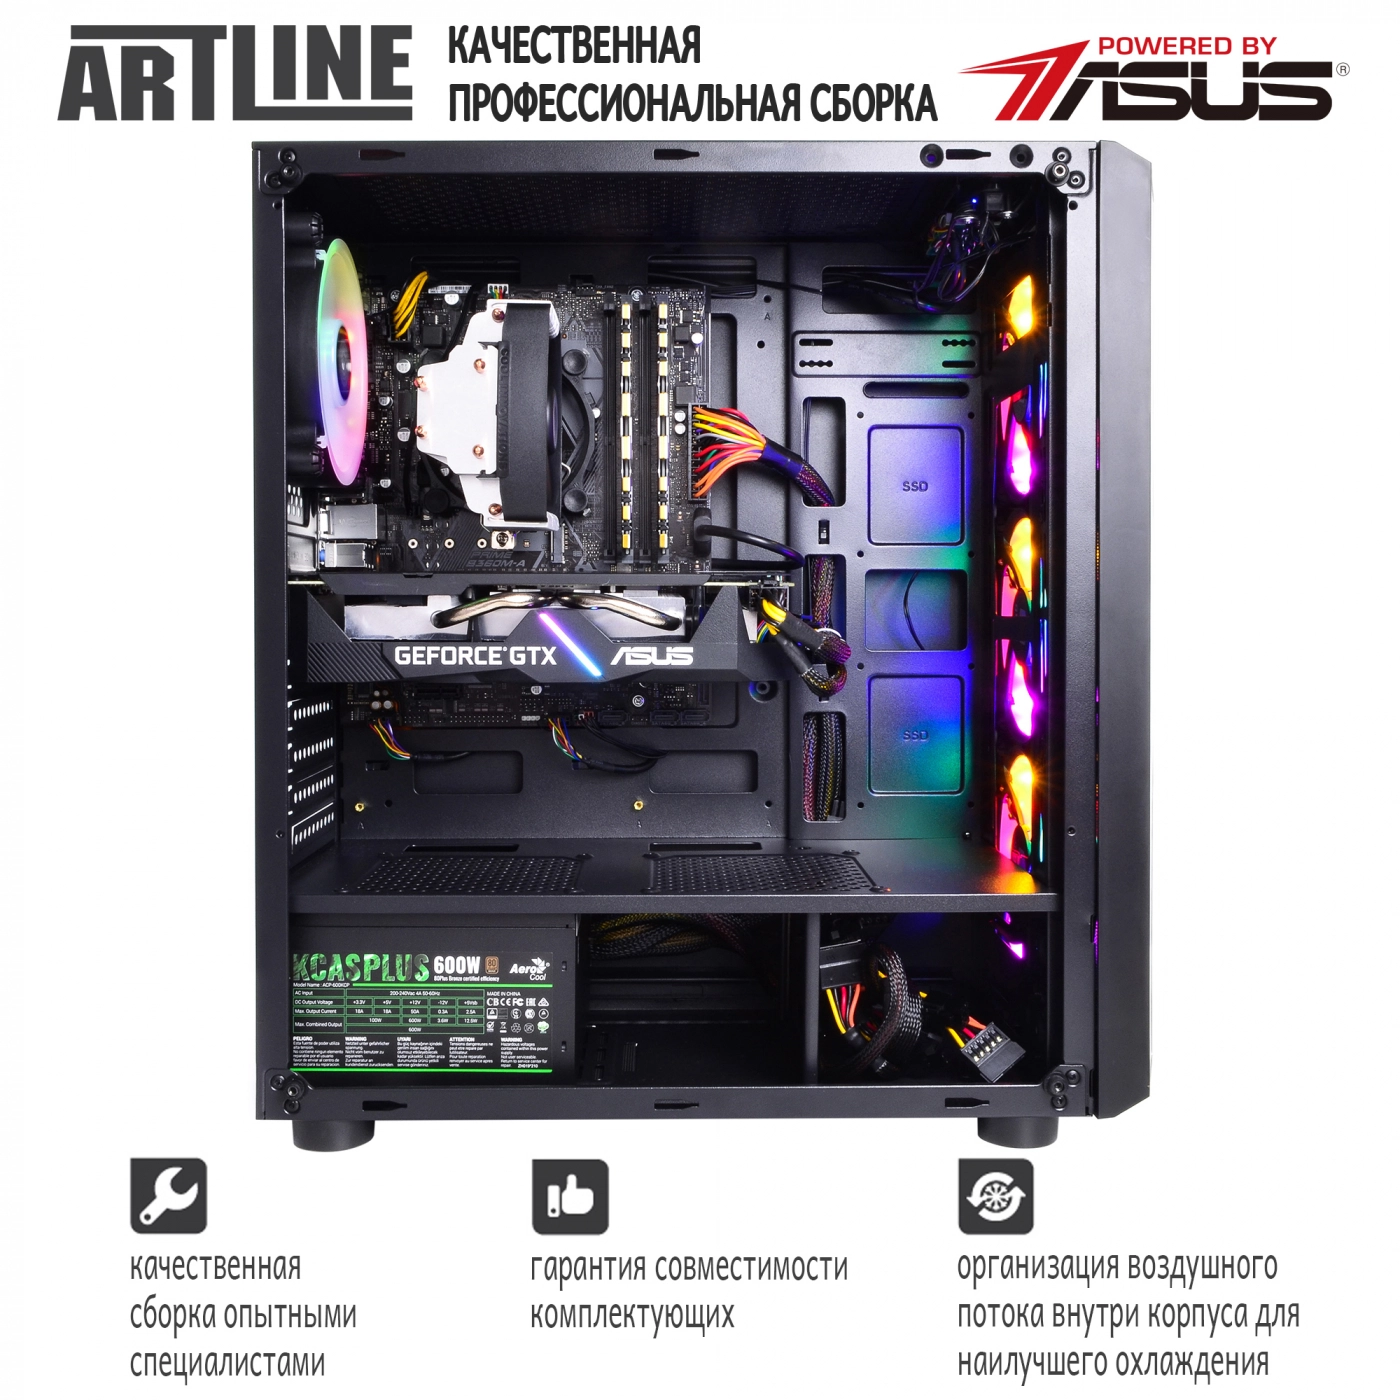 Купить Компьютер ARTLINE Gaming X55v10 - фото 9